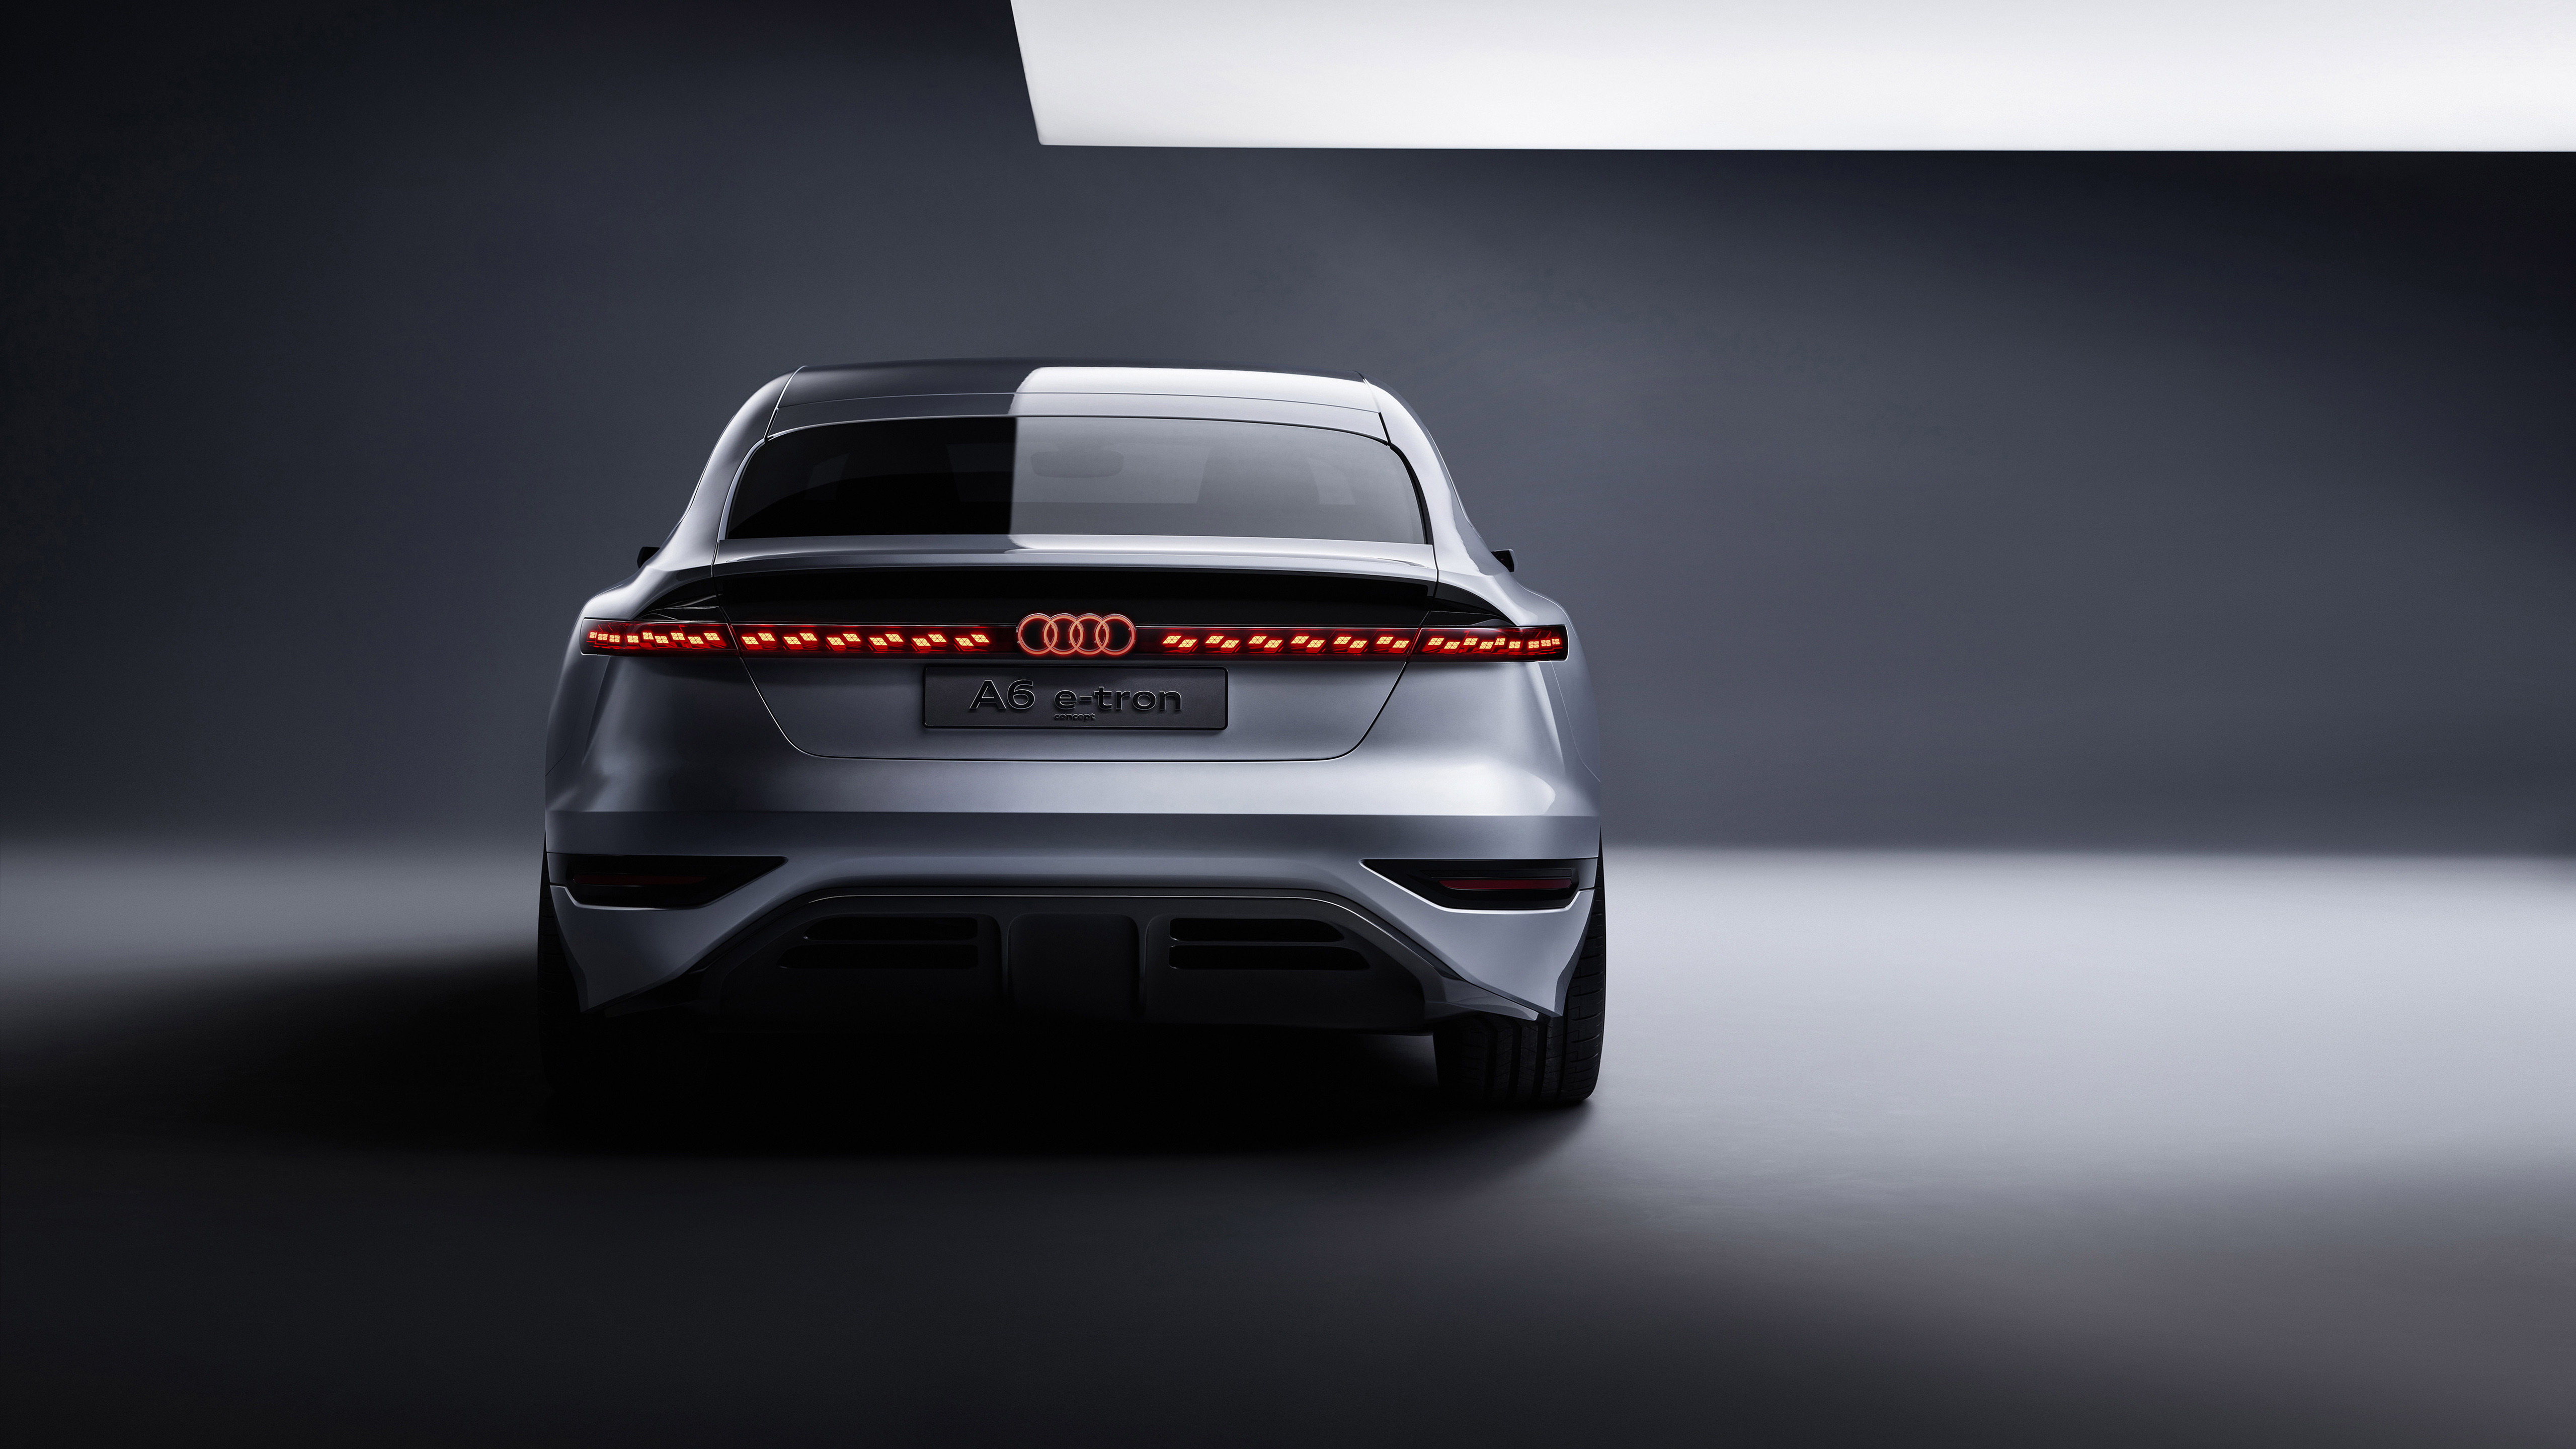 Audi A6 E Tron Concept 2021 5k 2 Wallpaper Hd Car Wallpapers Id 17967